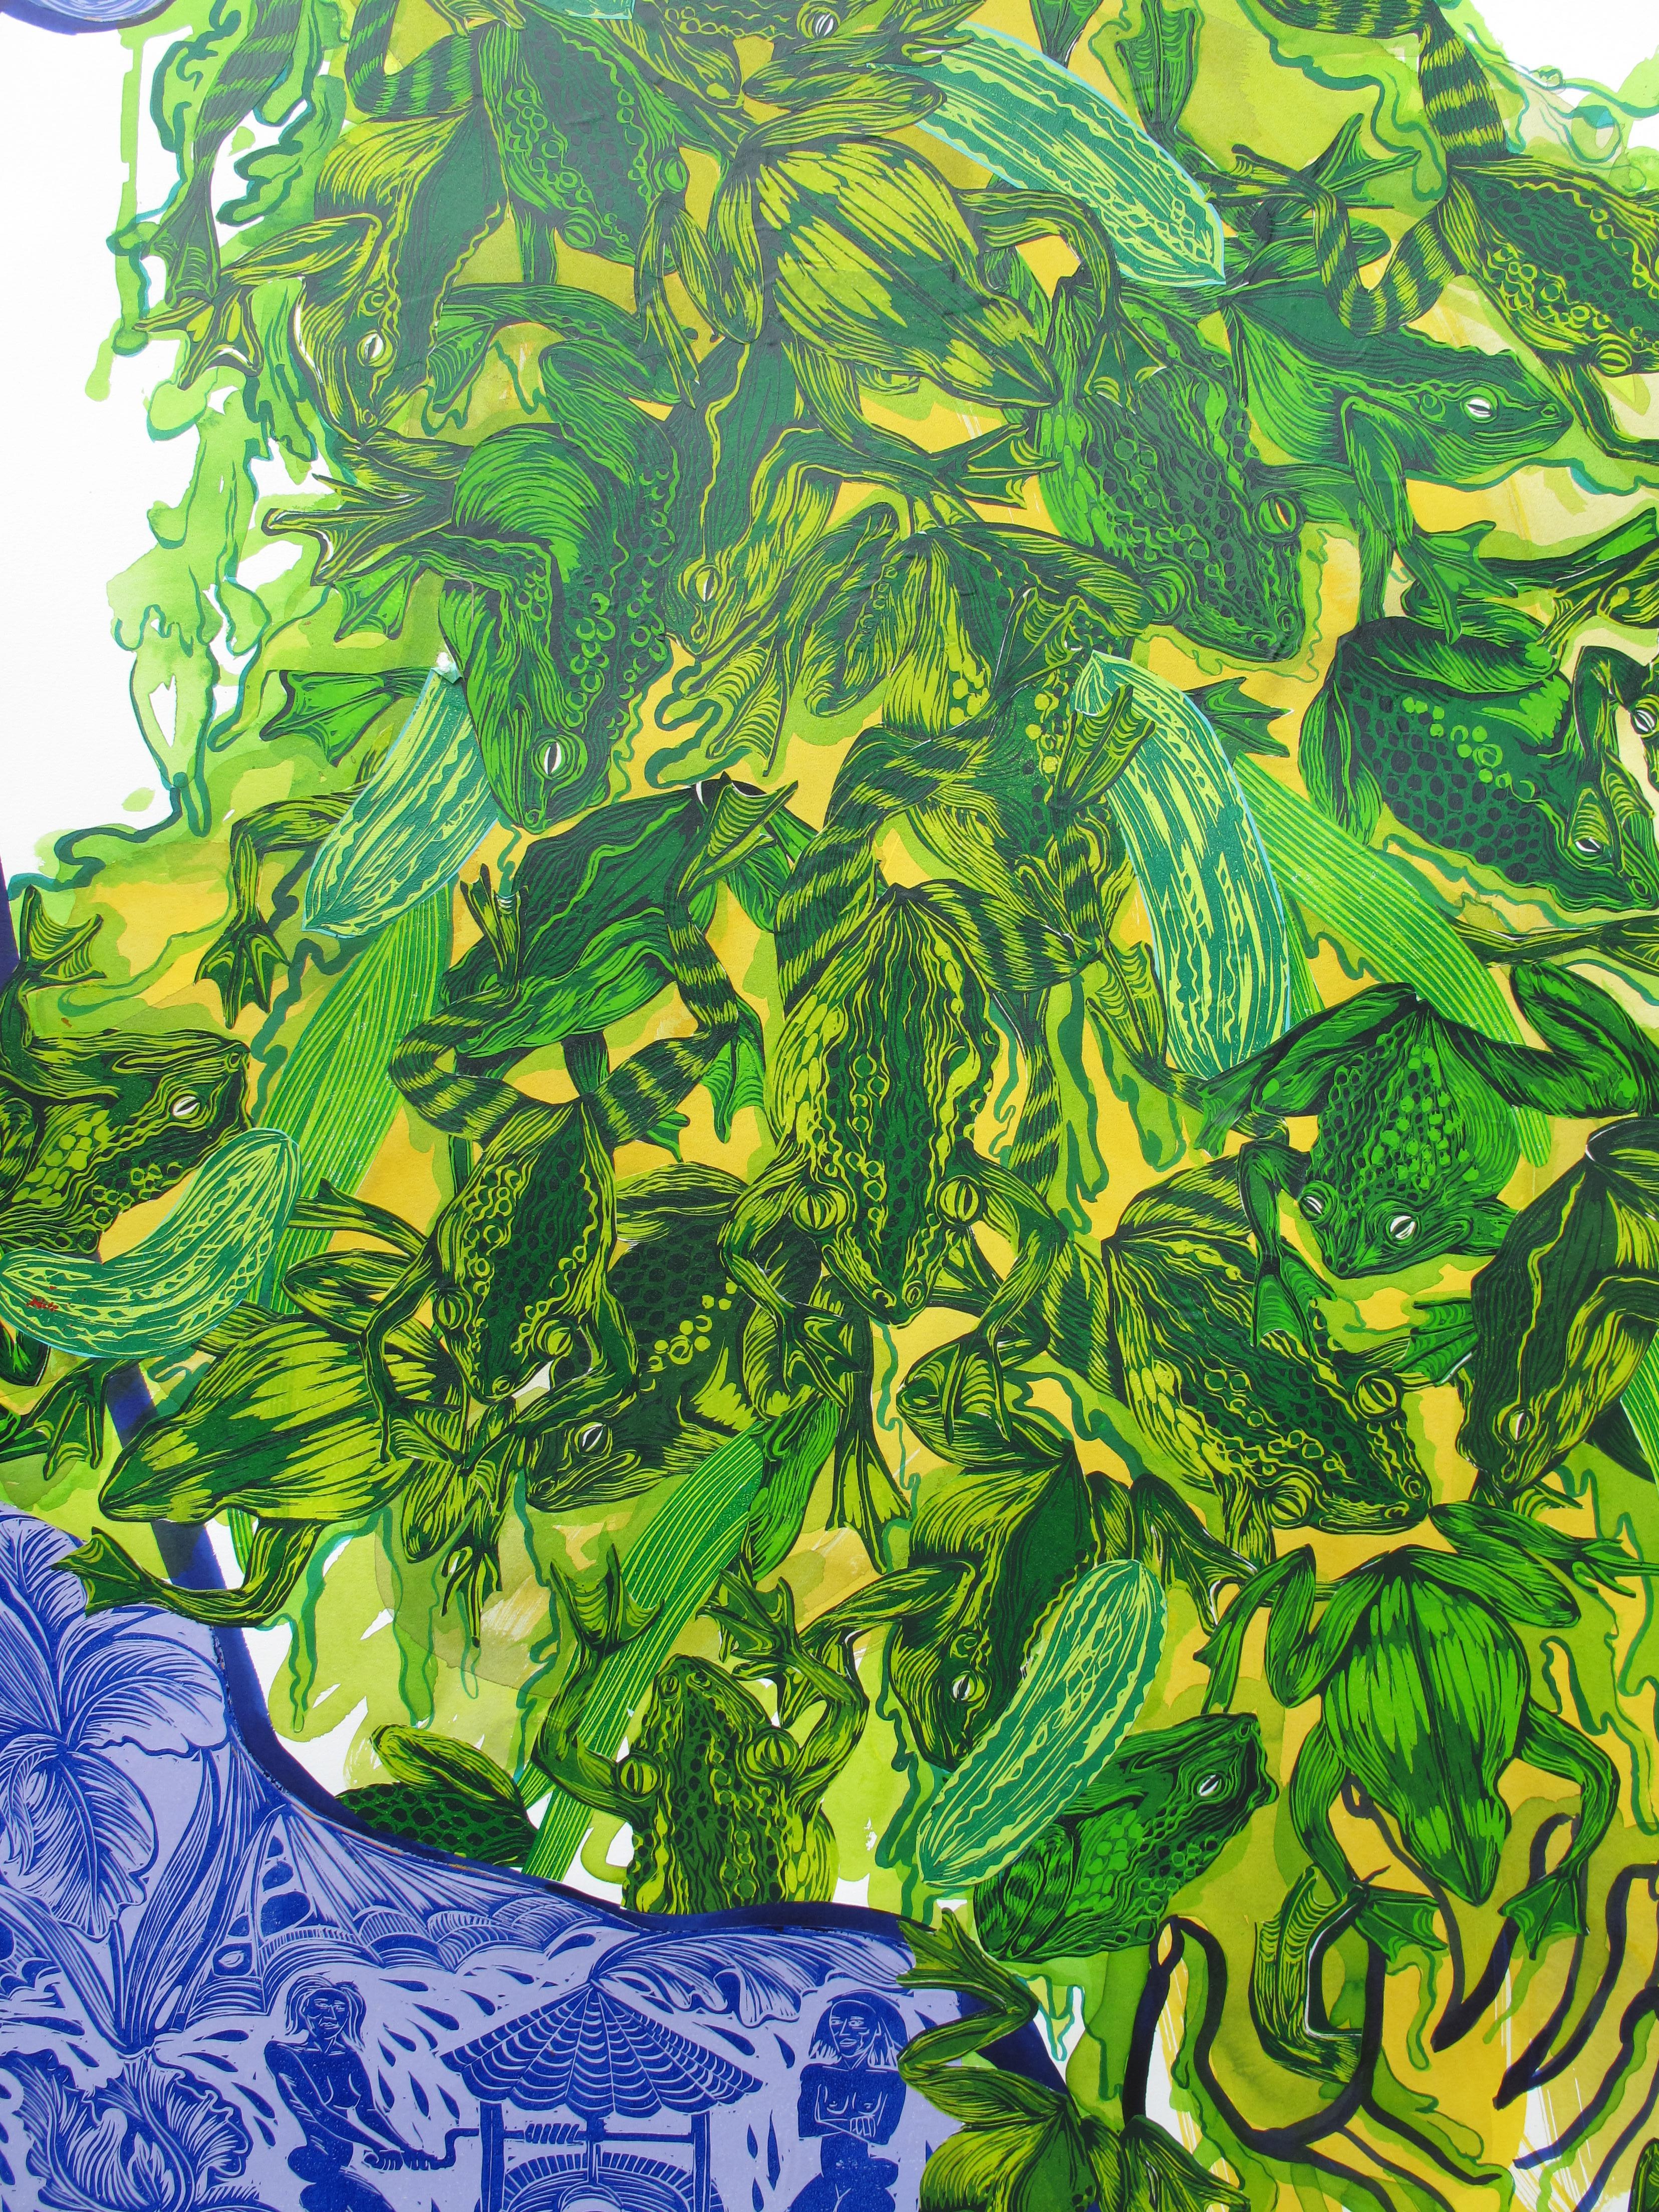  Grande peinture surréaliste Royal College of Art LGBTQ+ femmes artiste vert bleu en vente 2